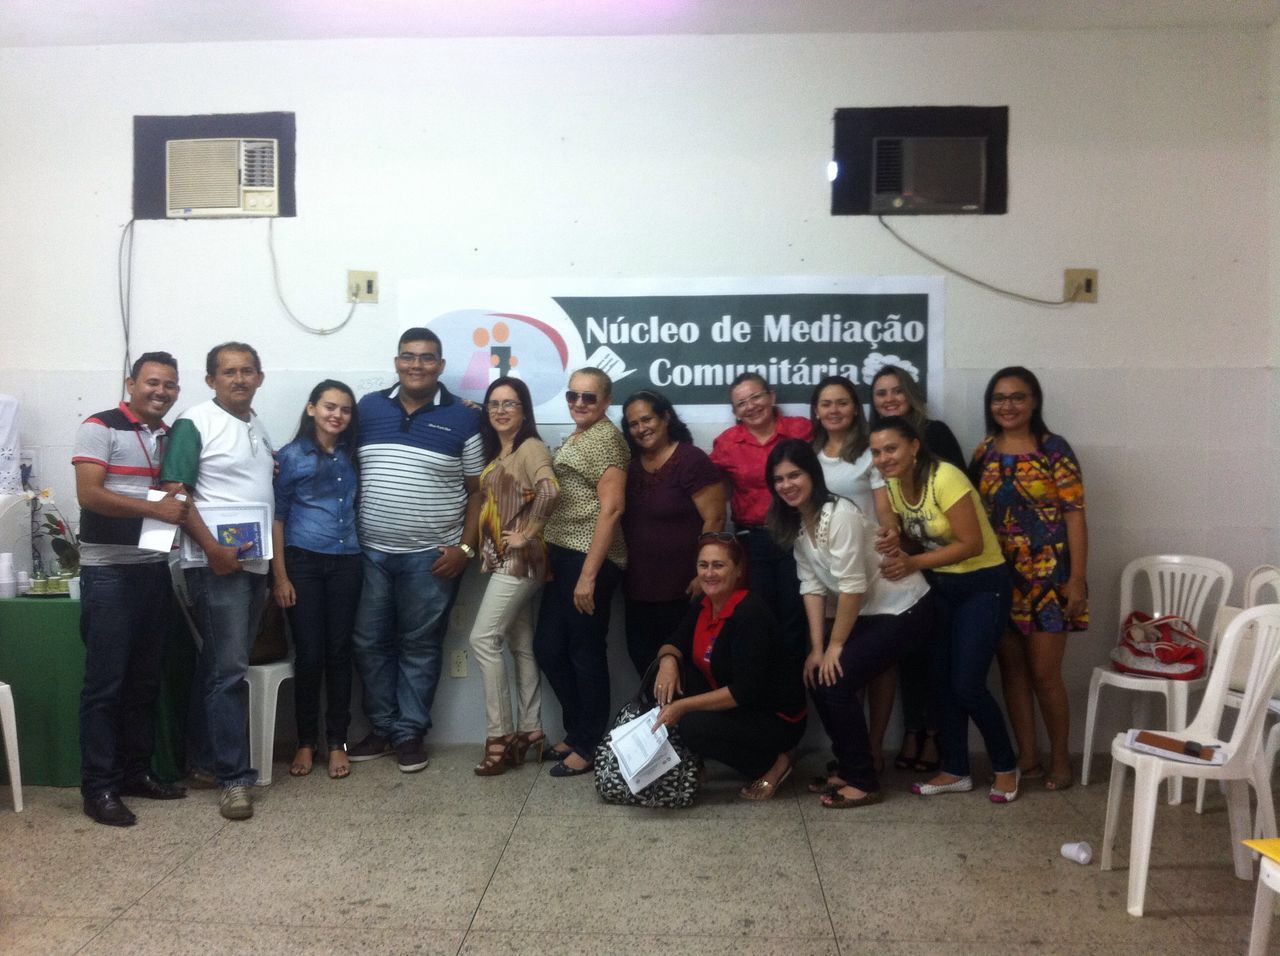 Criação do núcleo de mediação comunitária na cidade de Forquilha